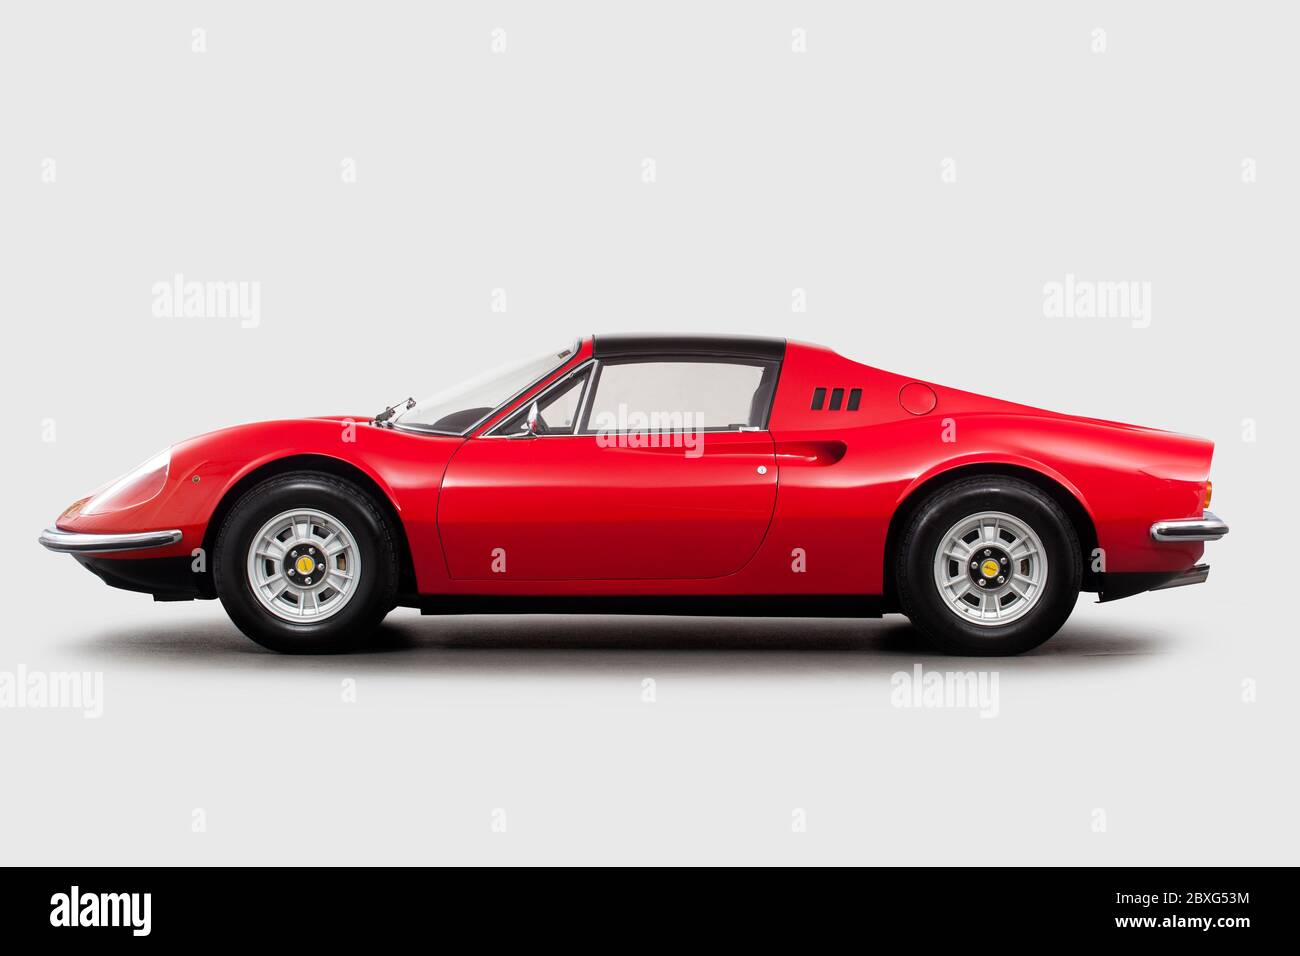 Ferrari Dino 246 GTS side profile Stock Photo